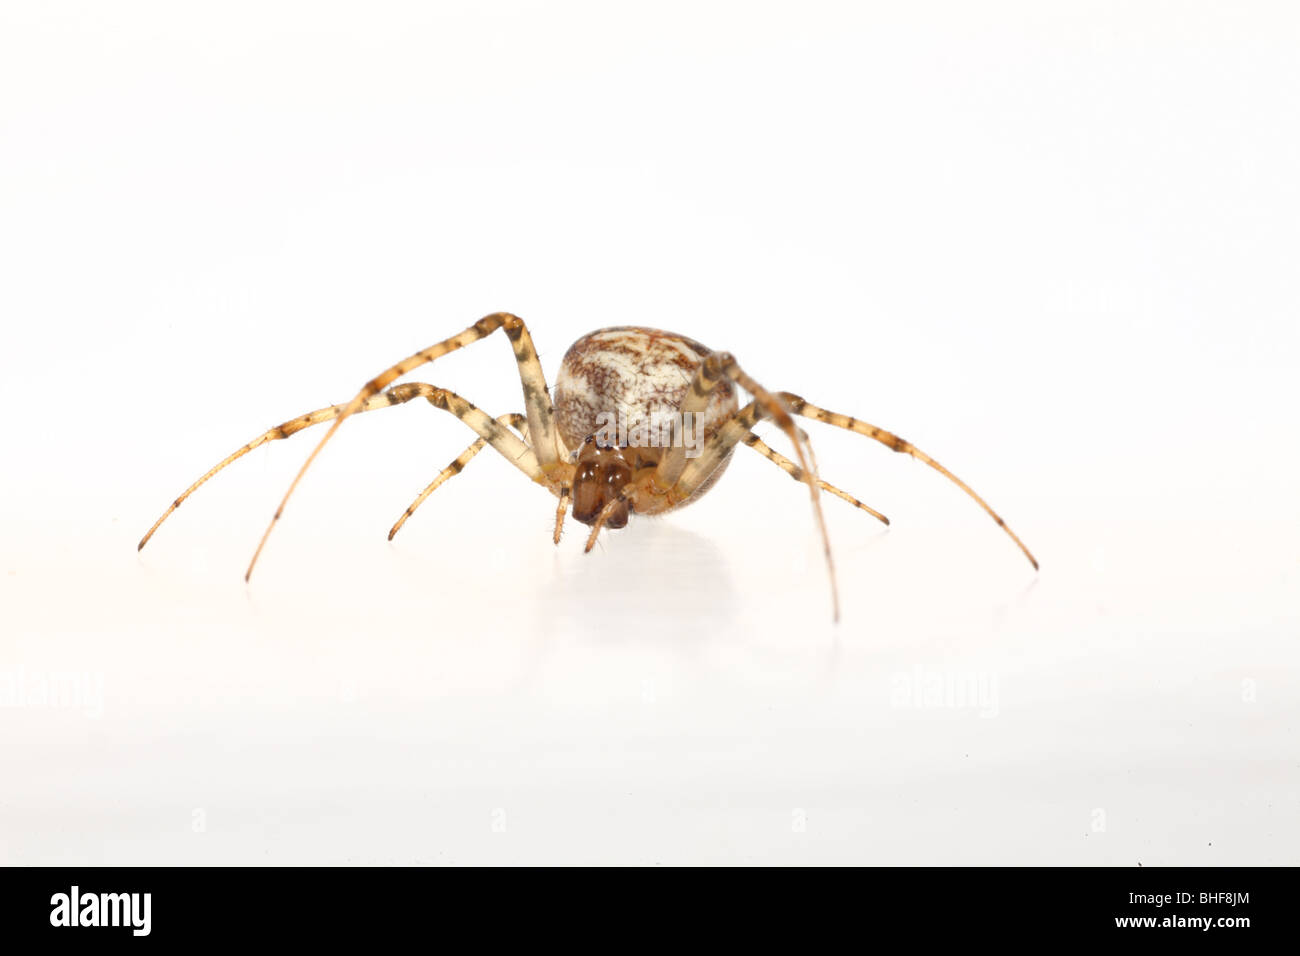 Il ragno granchio (Xysticus cristatus) femmina. Live spider fotografati contro uno sfondo bianco su un portatile studio. Foto Stock